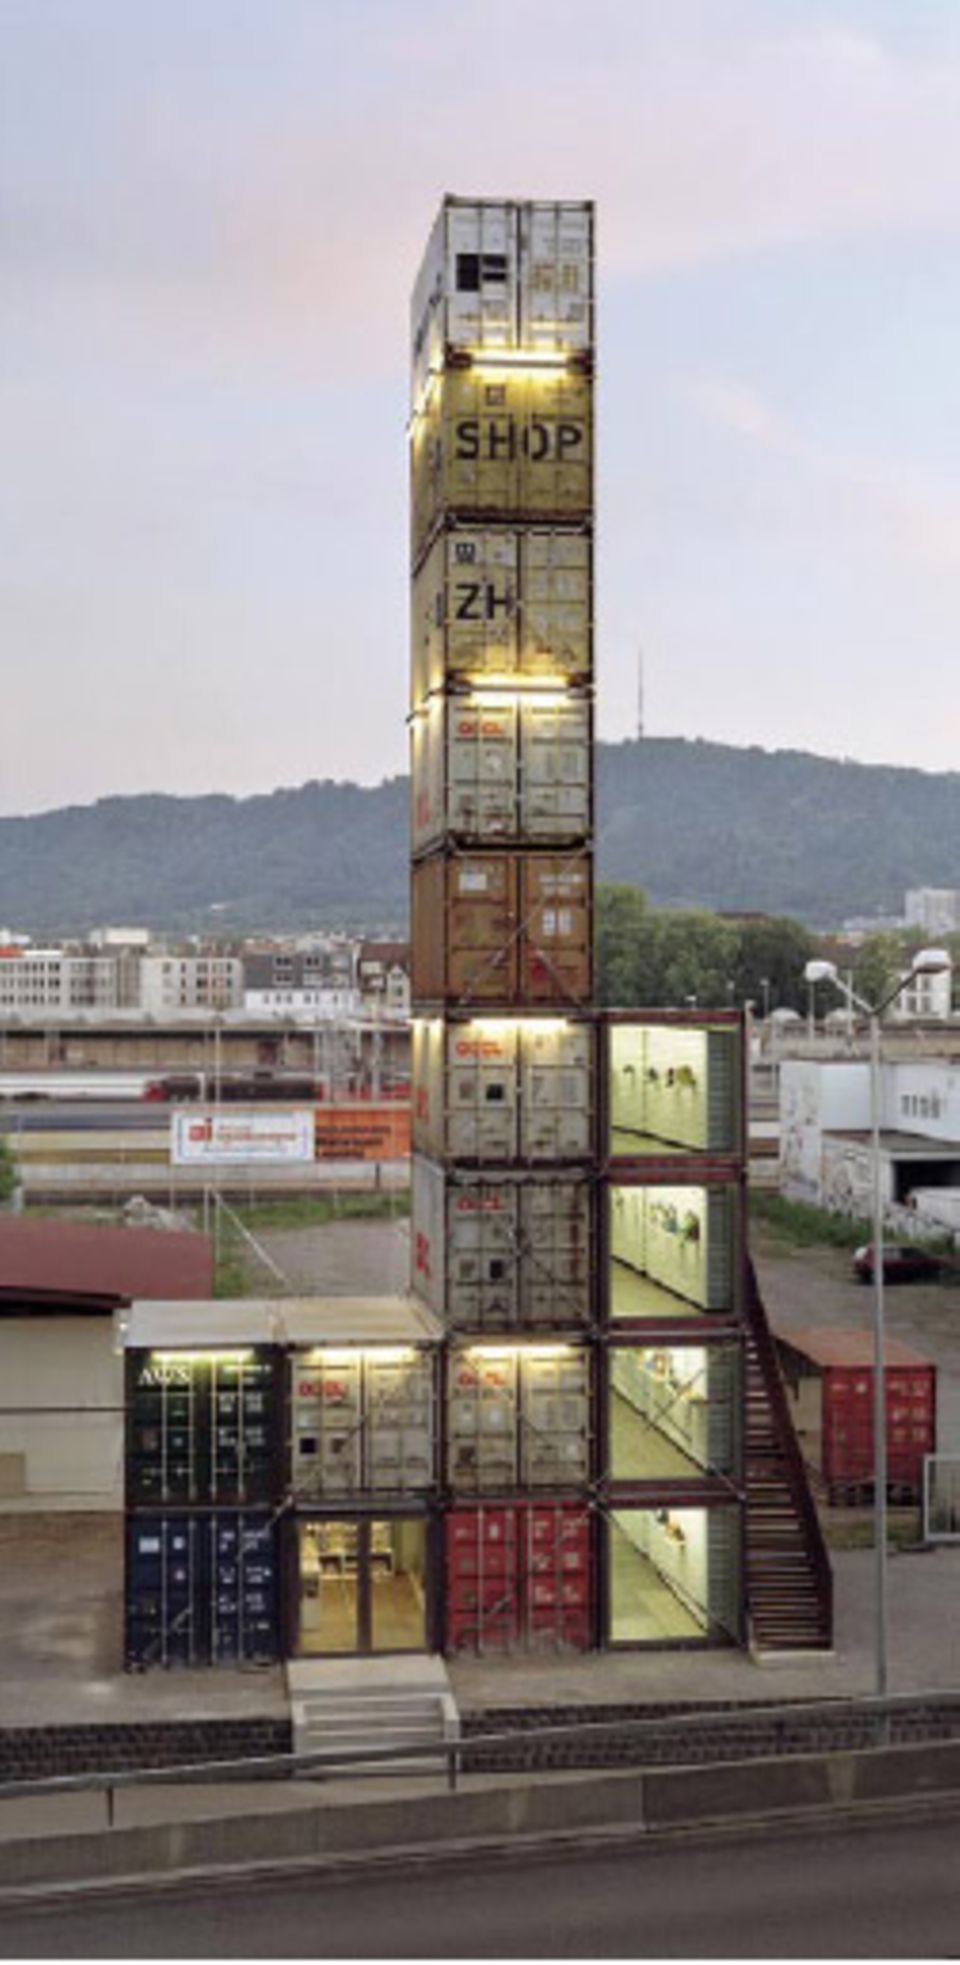 26 Meter hoch ist er, der Freitag-Shop in Zürich. Er besteht aus 17 Containern und beherbergt die weltweit größte Auswahl an Freitag-Taschen